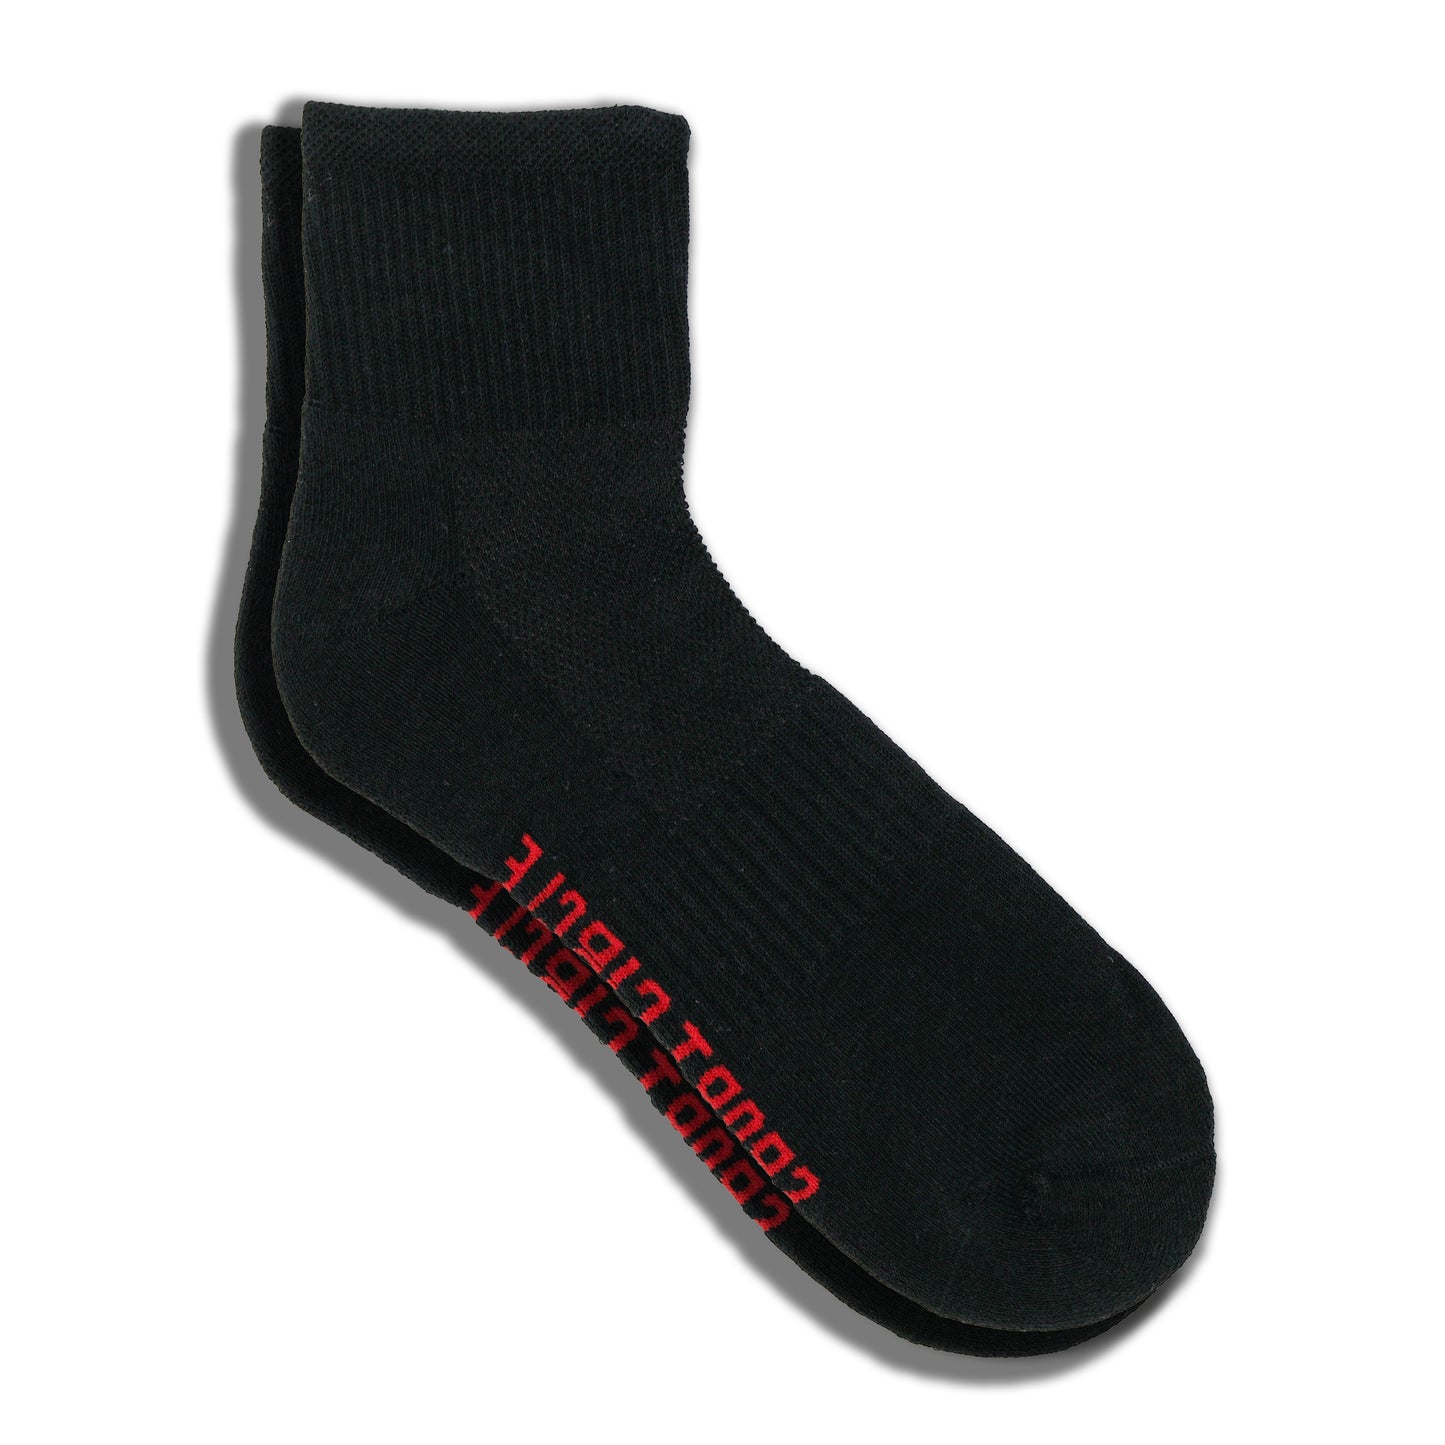 3-Pack Men's Premium Quarter Socks